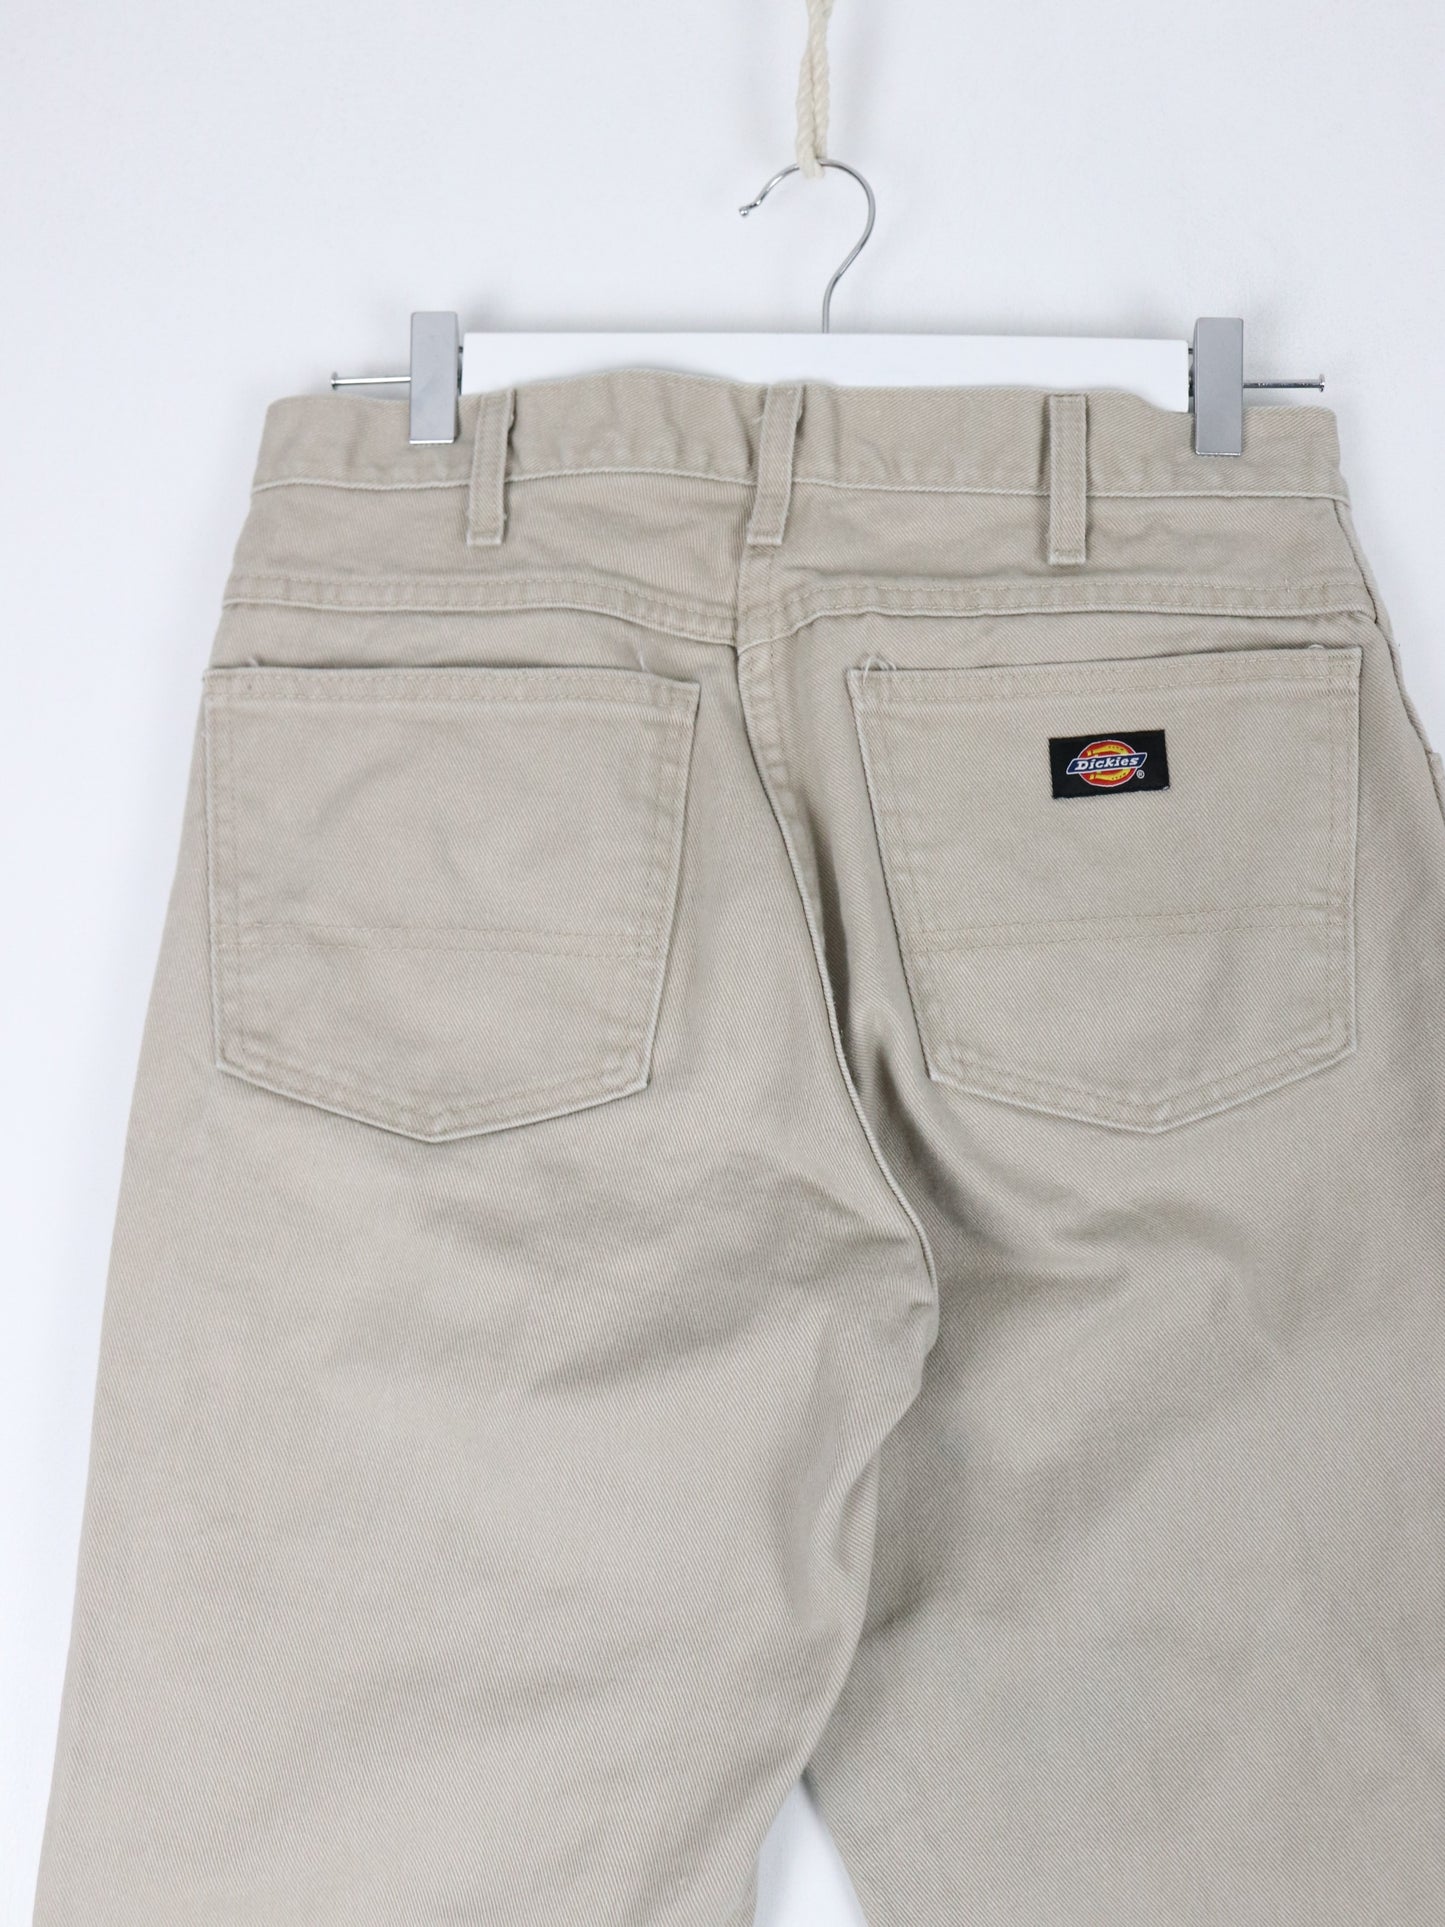 Vintage Dickies Pants Fits Mens 30 x 29 Beige Work Wear Carpenters